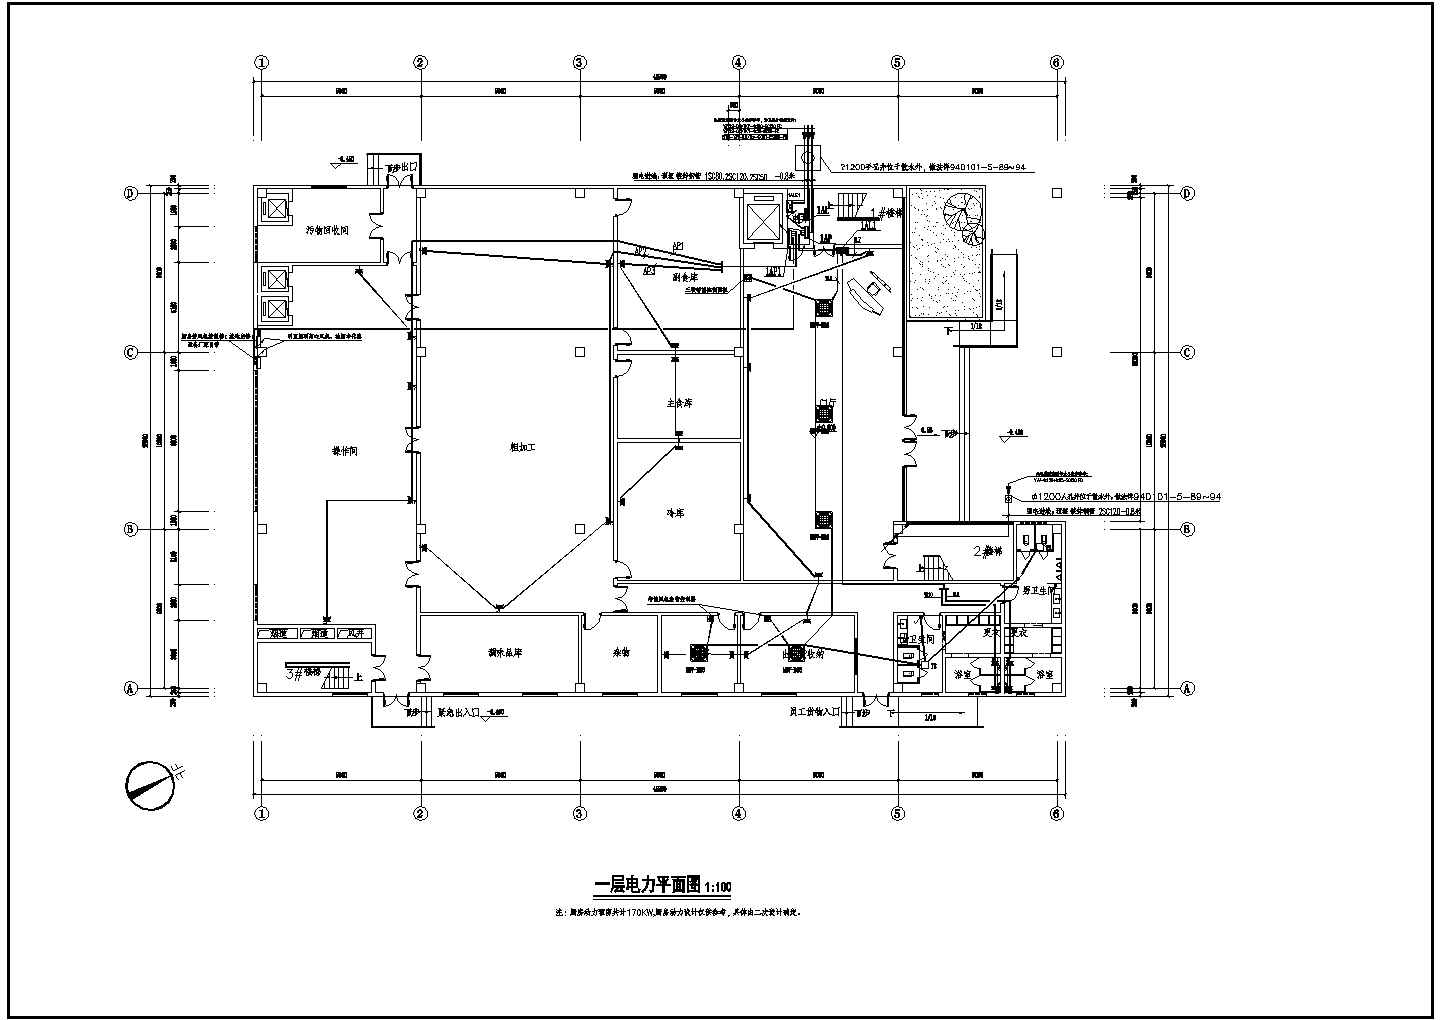 成都某公司三层钢筋混凝土框架结构食堂电气施工图纸